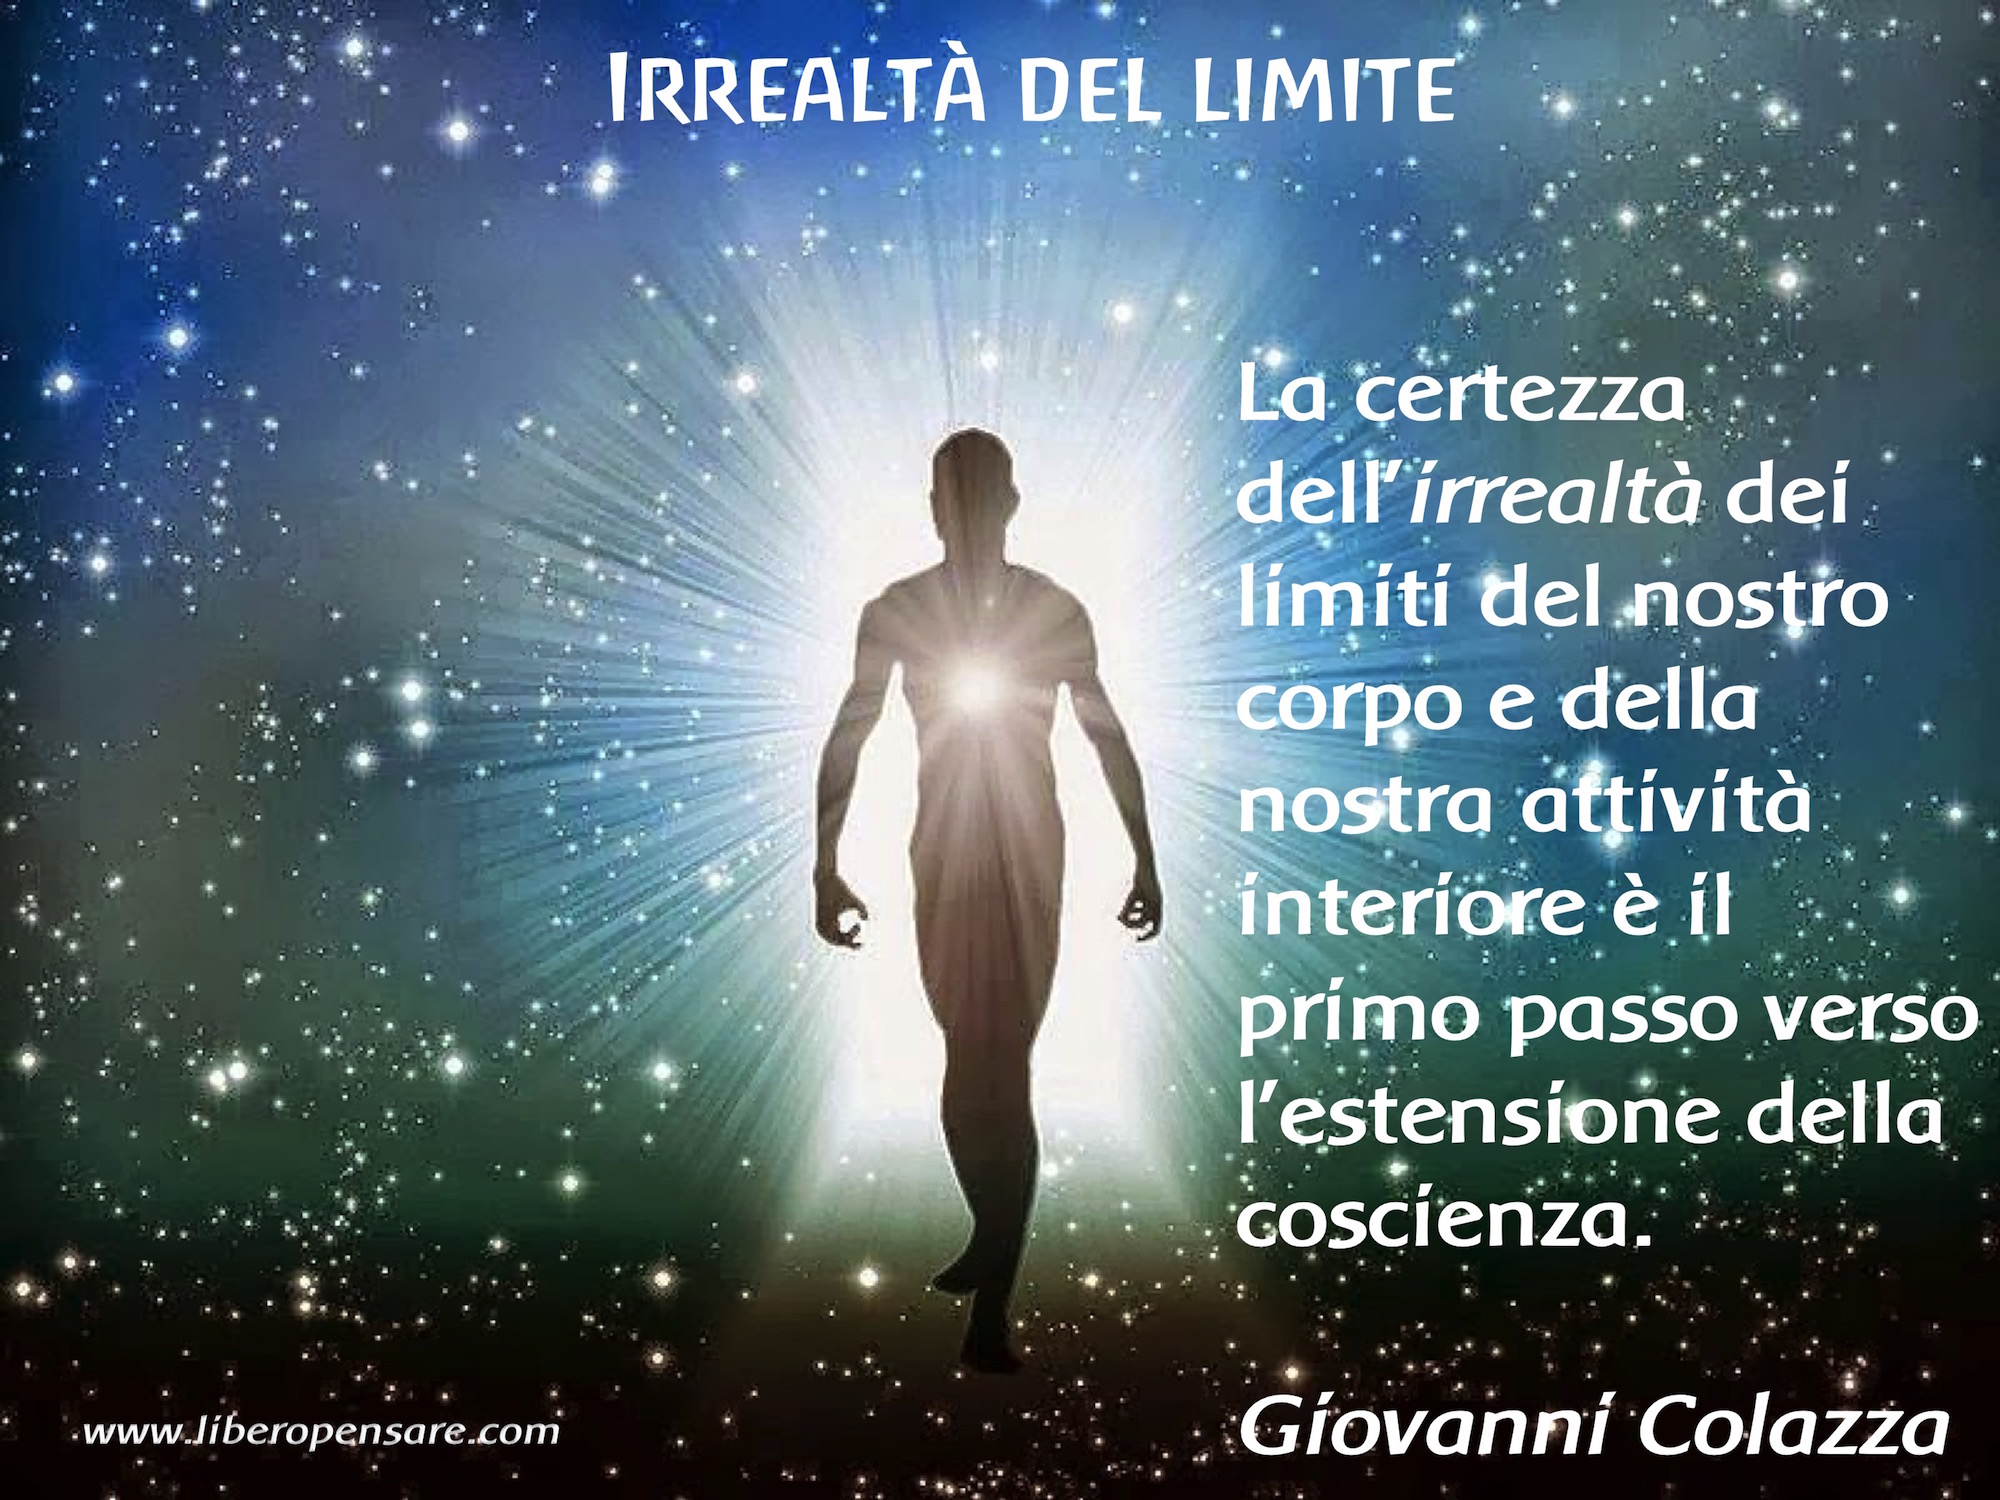 Irrealta_del_limite_Giovanni_Colazza.jpg